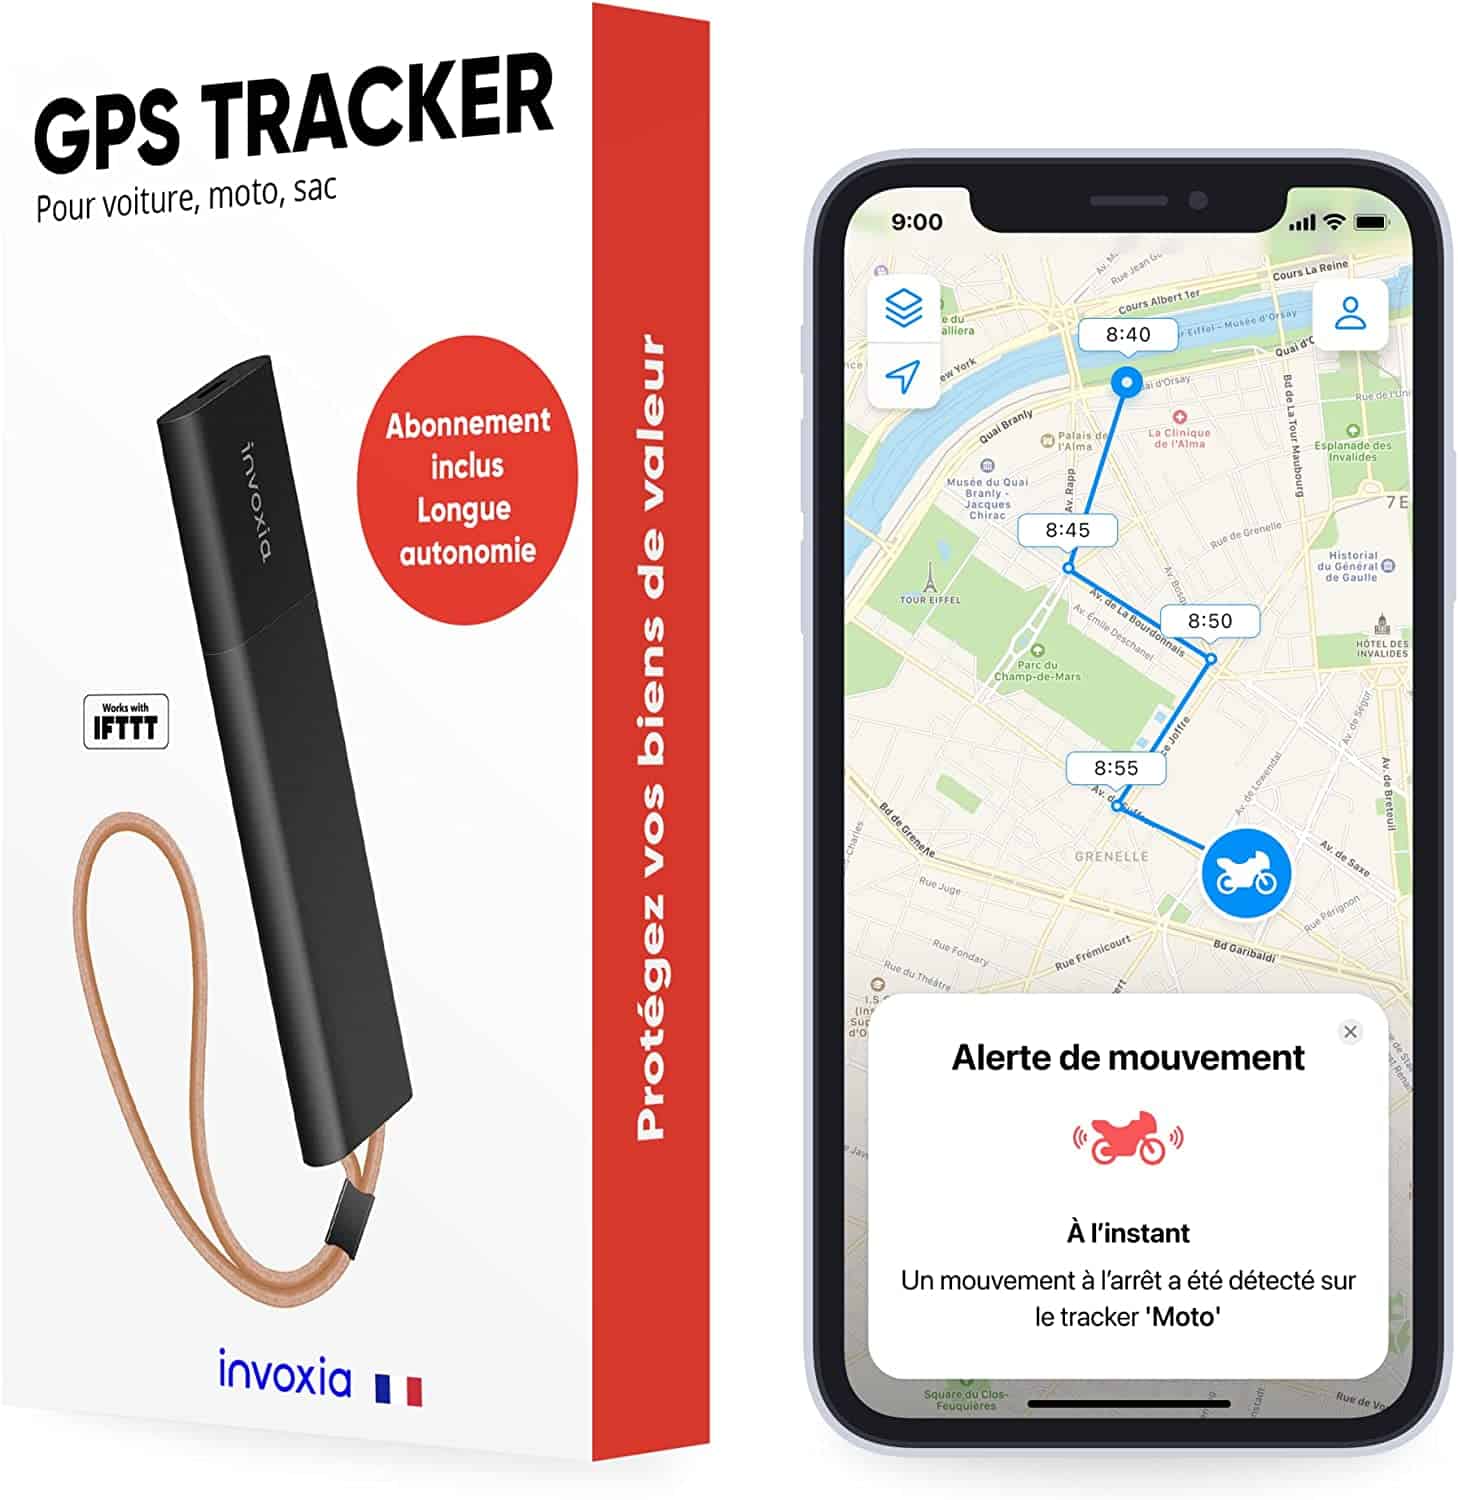 COMMENT SAVOIR SI ON A UN TRACEUR GPS DANS SA VOITURE ?